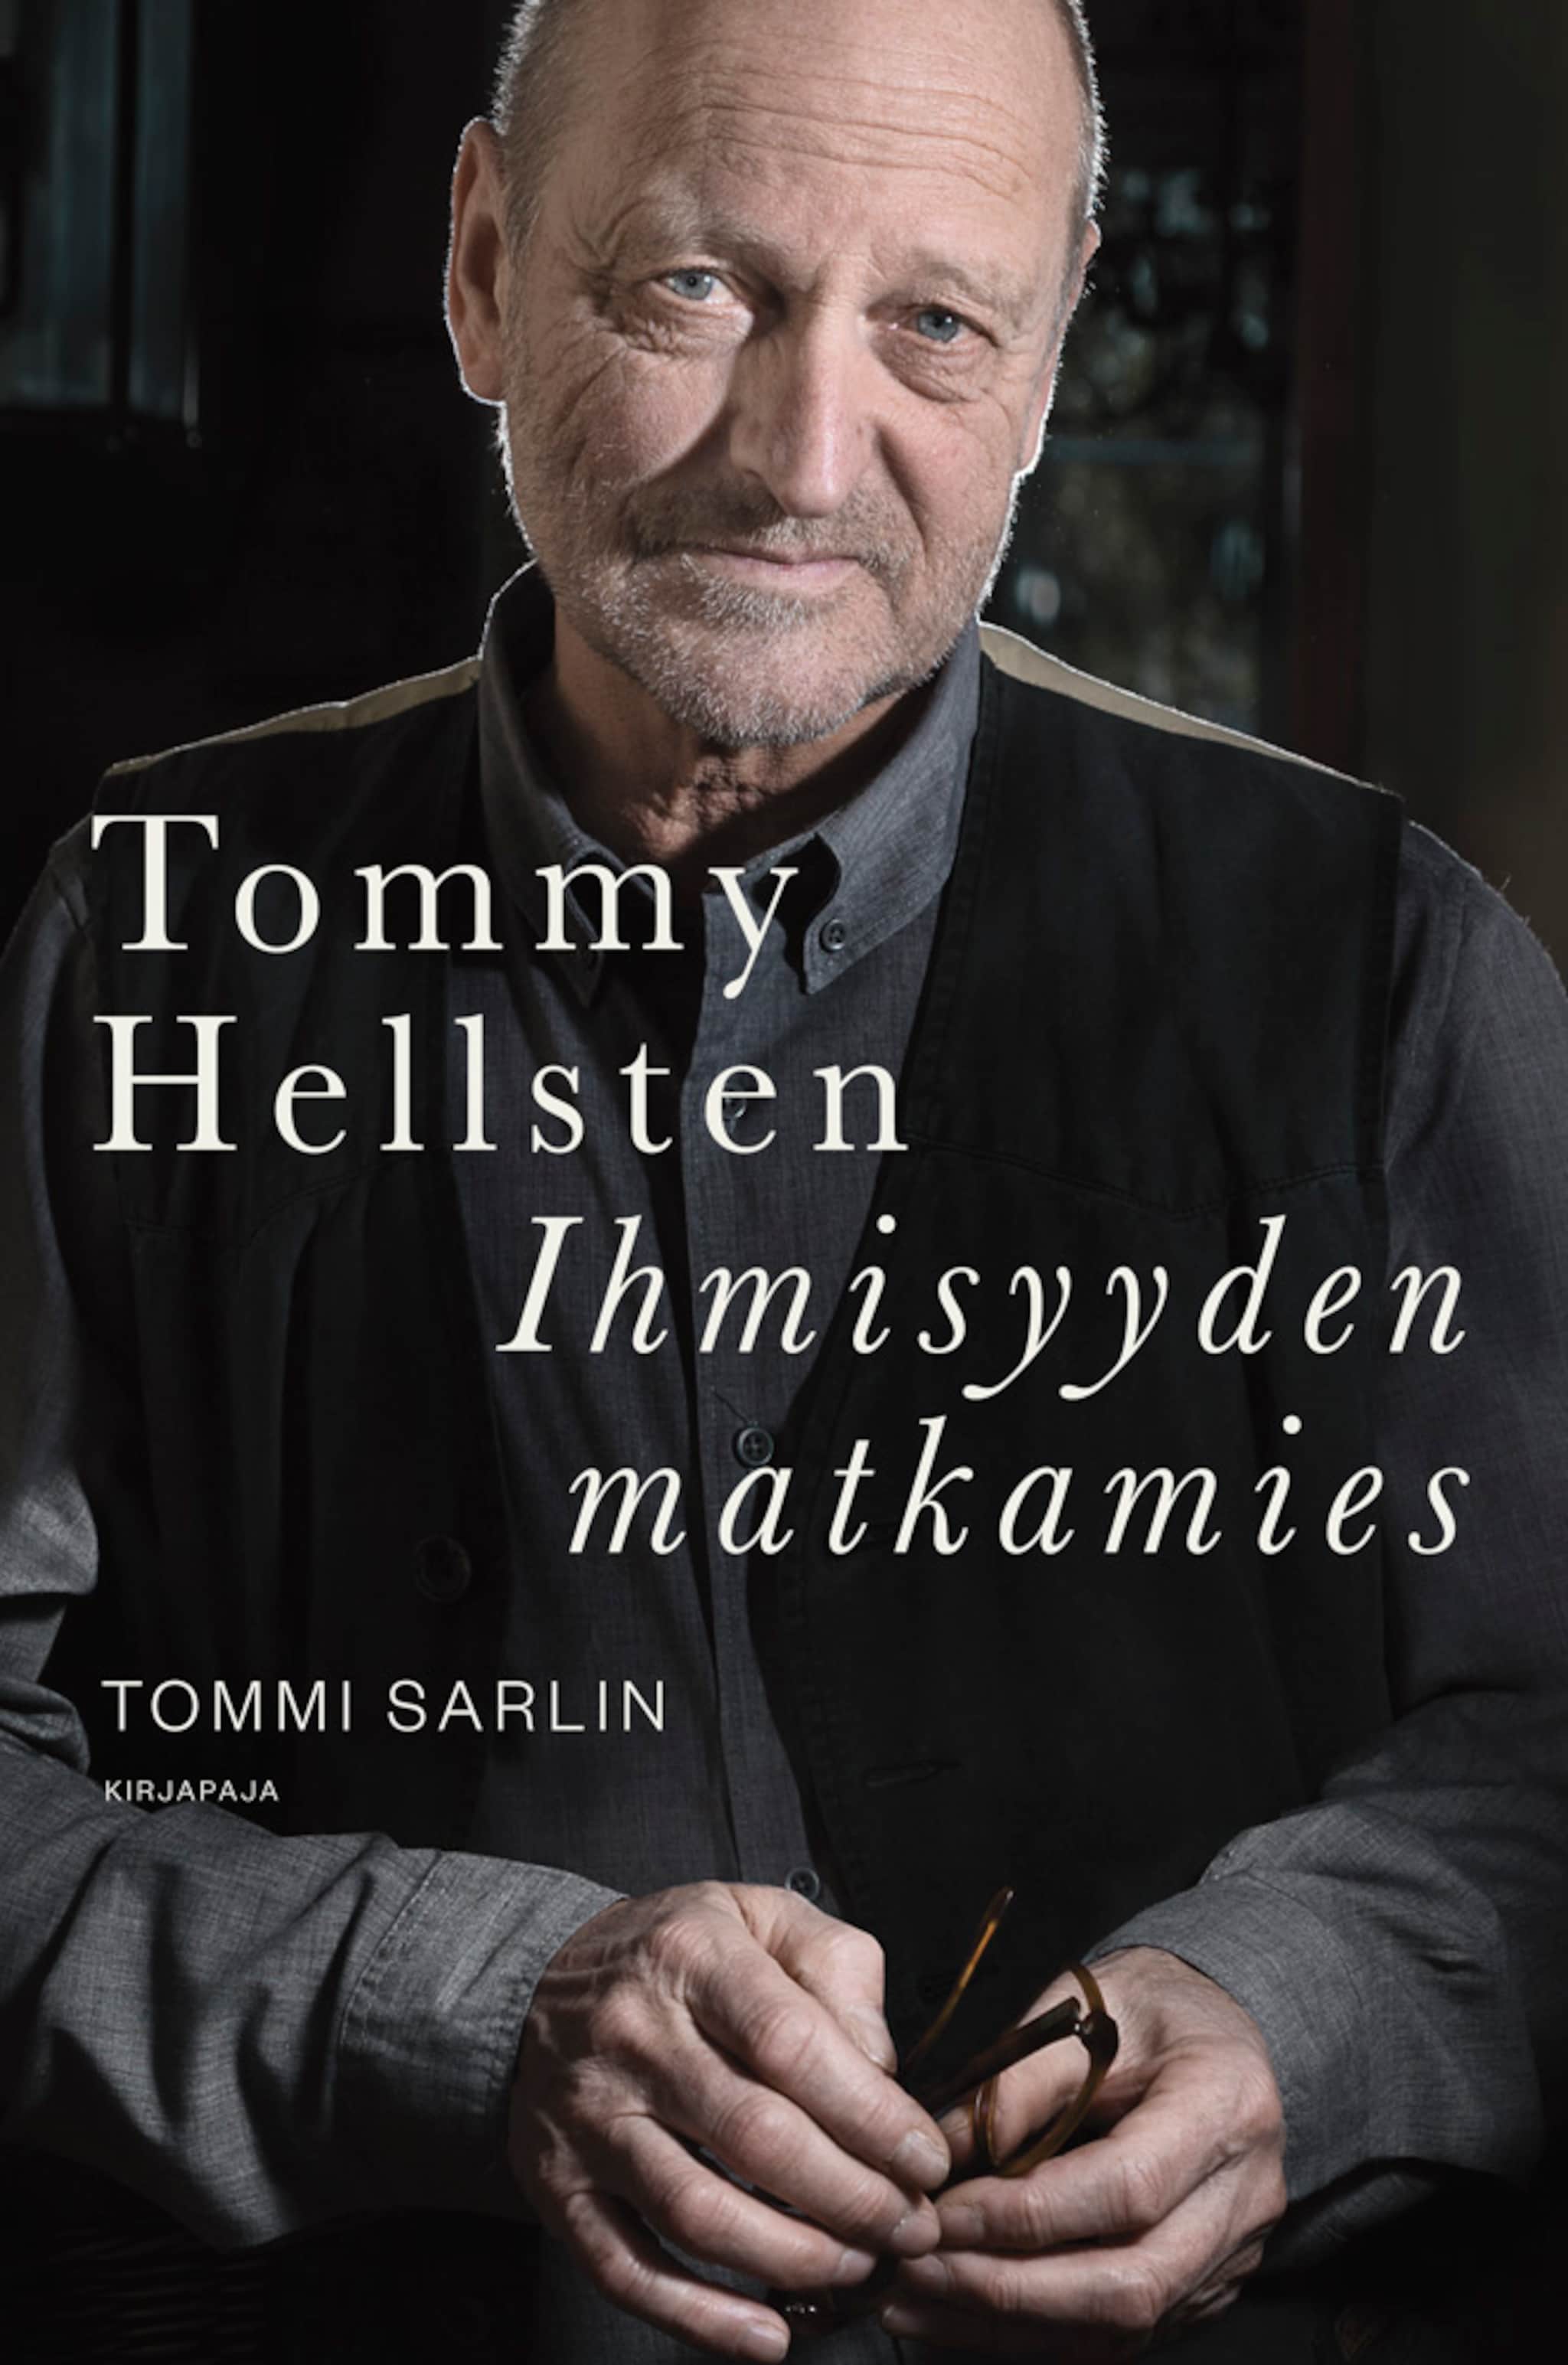 Tommy Hellsten,Ihmisyyden matkamies ilmaiseksi